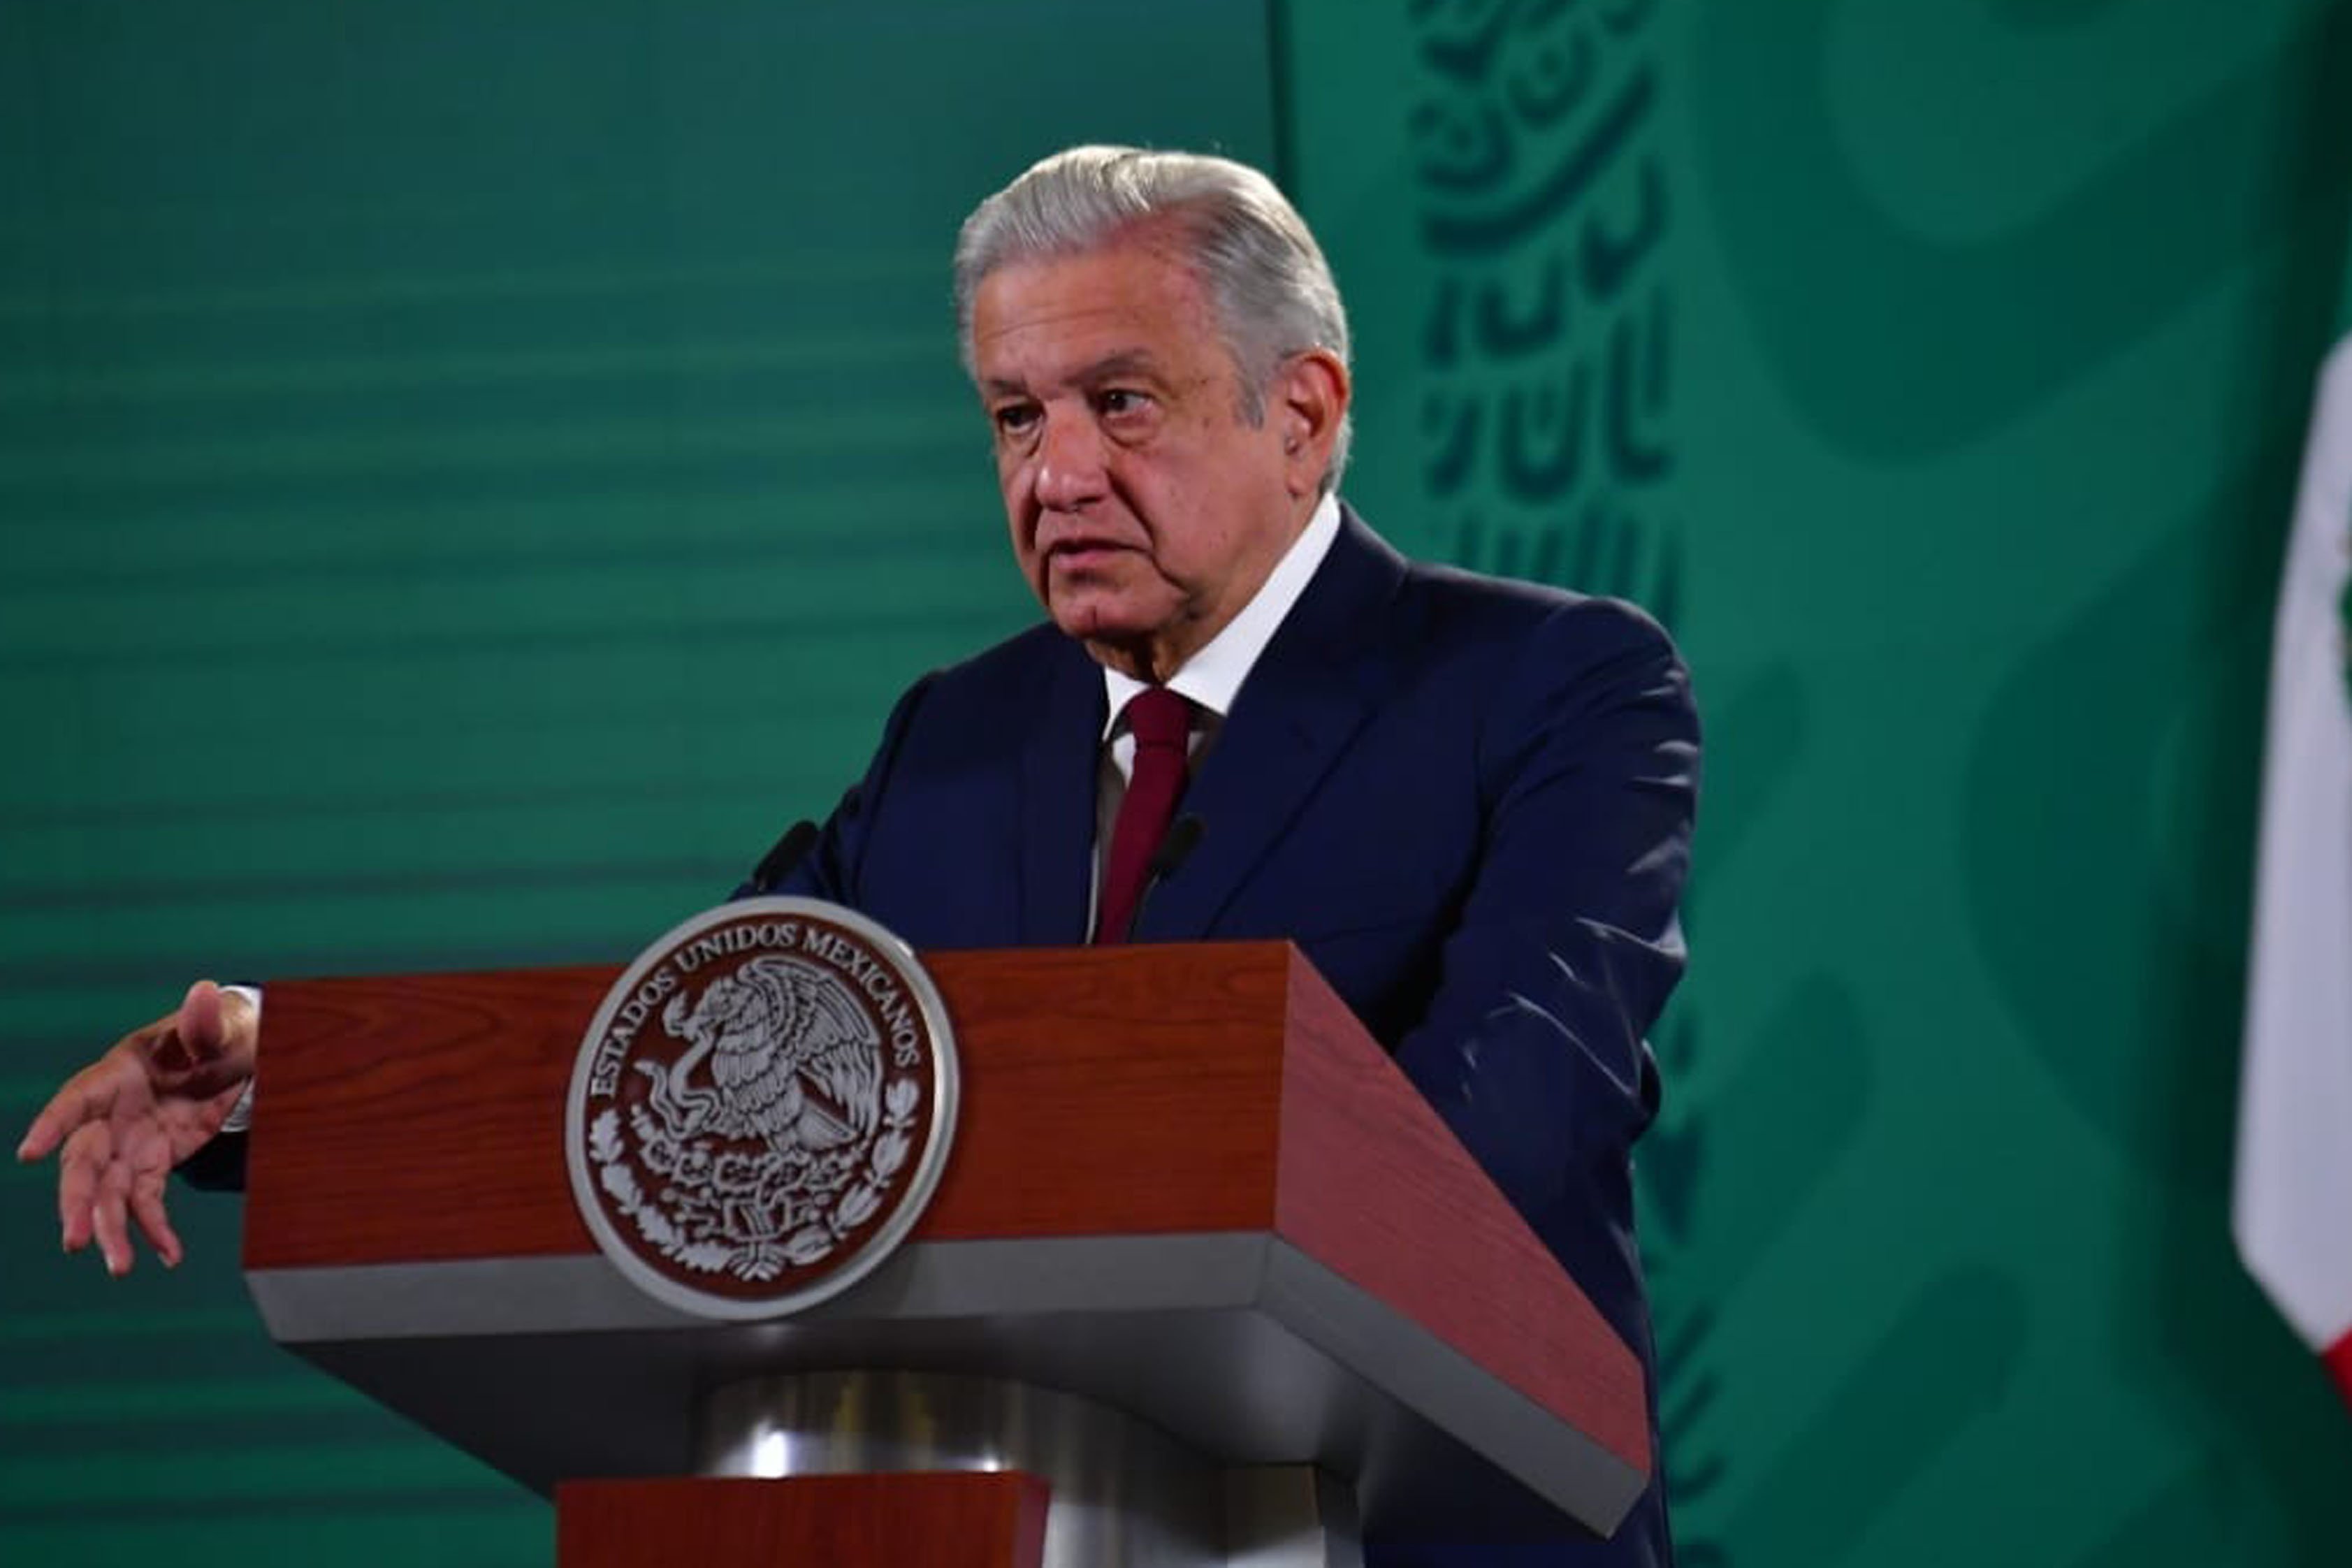 Cleca del president de Mèxic a Sánchez: "Sembla un empleat de les elèctriques"